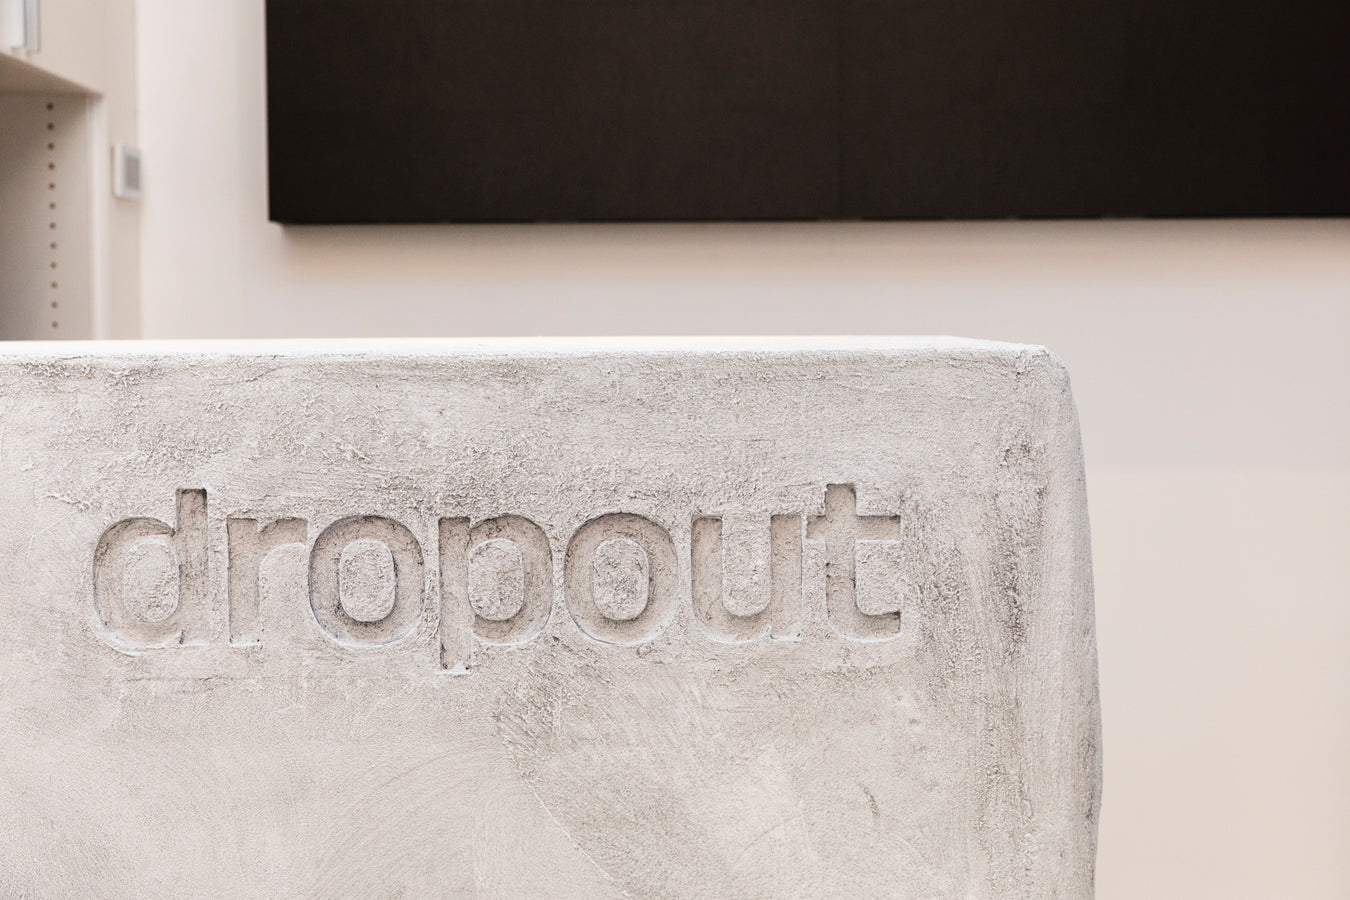 Dropout_-23 - dropout